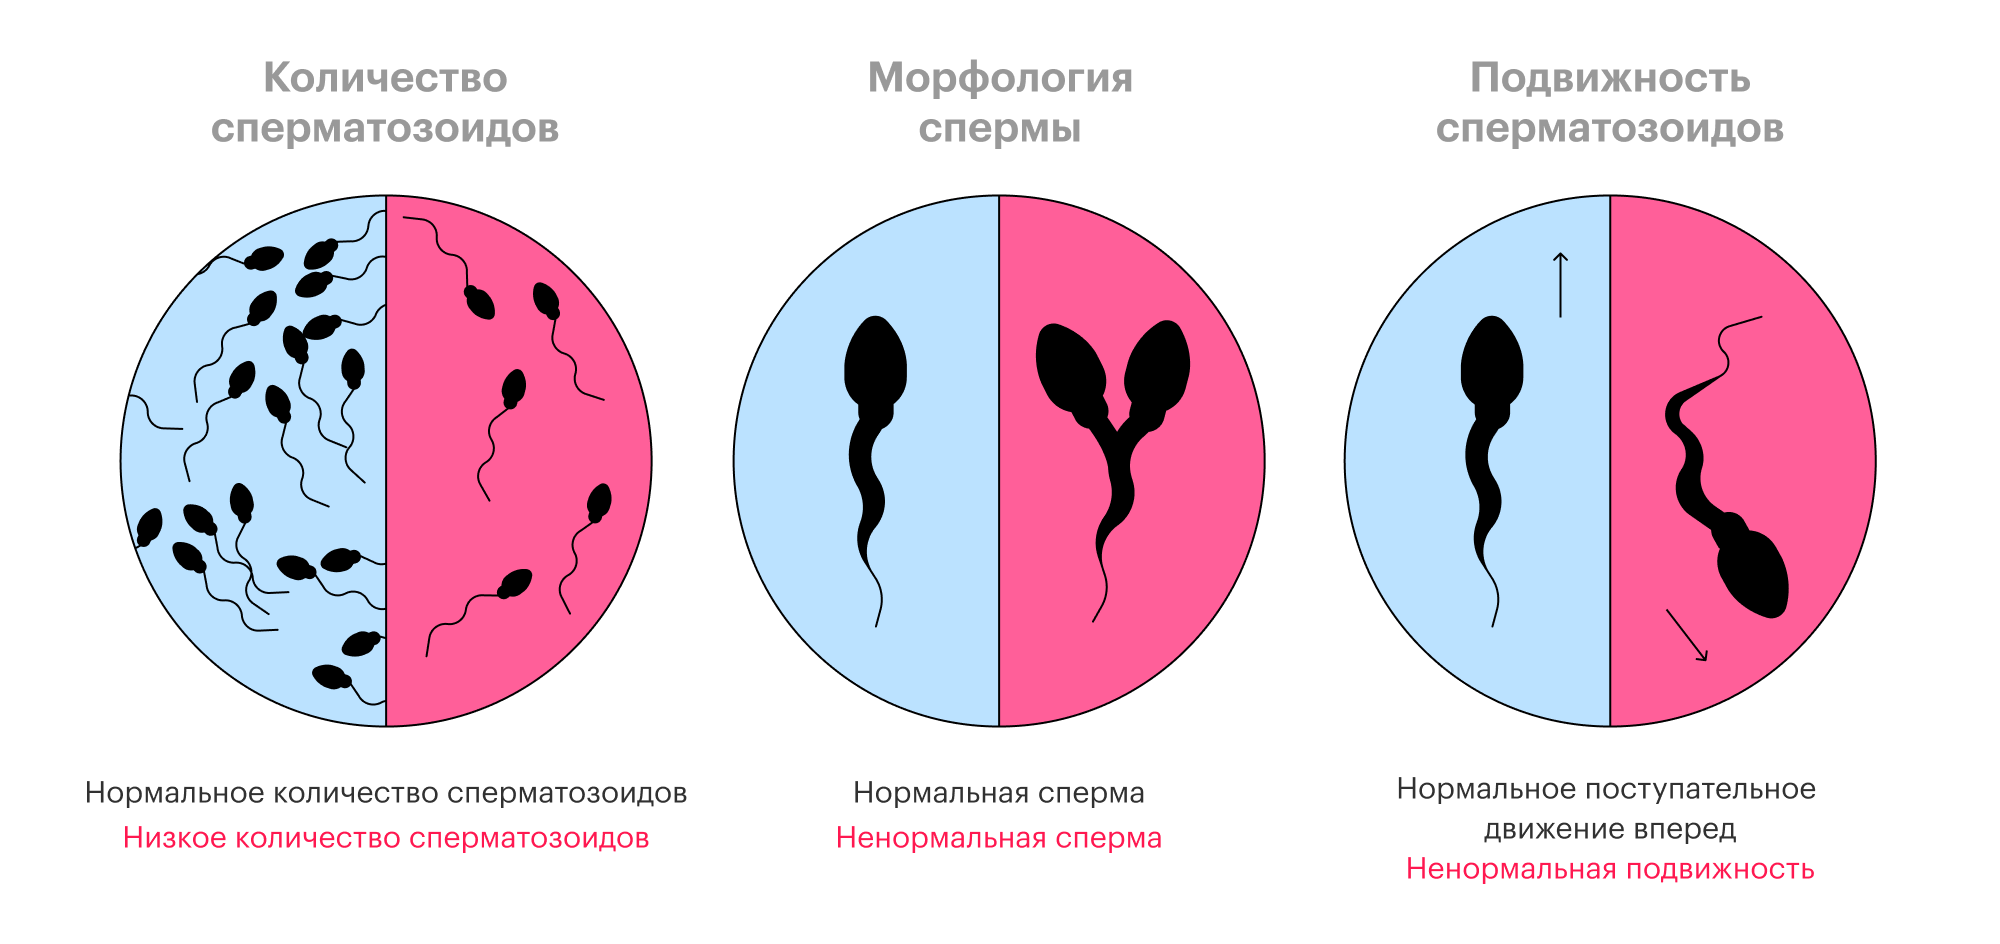 Три критерия здоровья сперматозоидов: количество, форма и подвижность. В синем поле — здоровая сперма, в красном — не очень